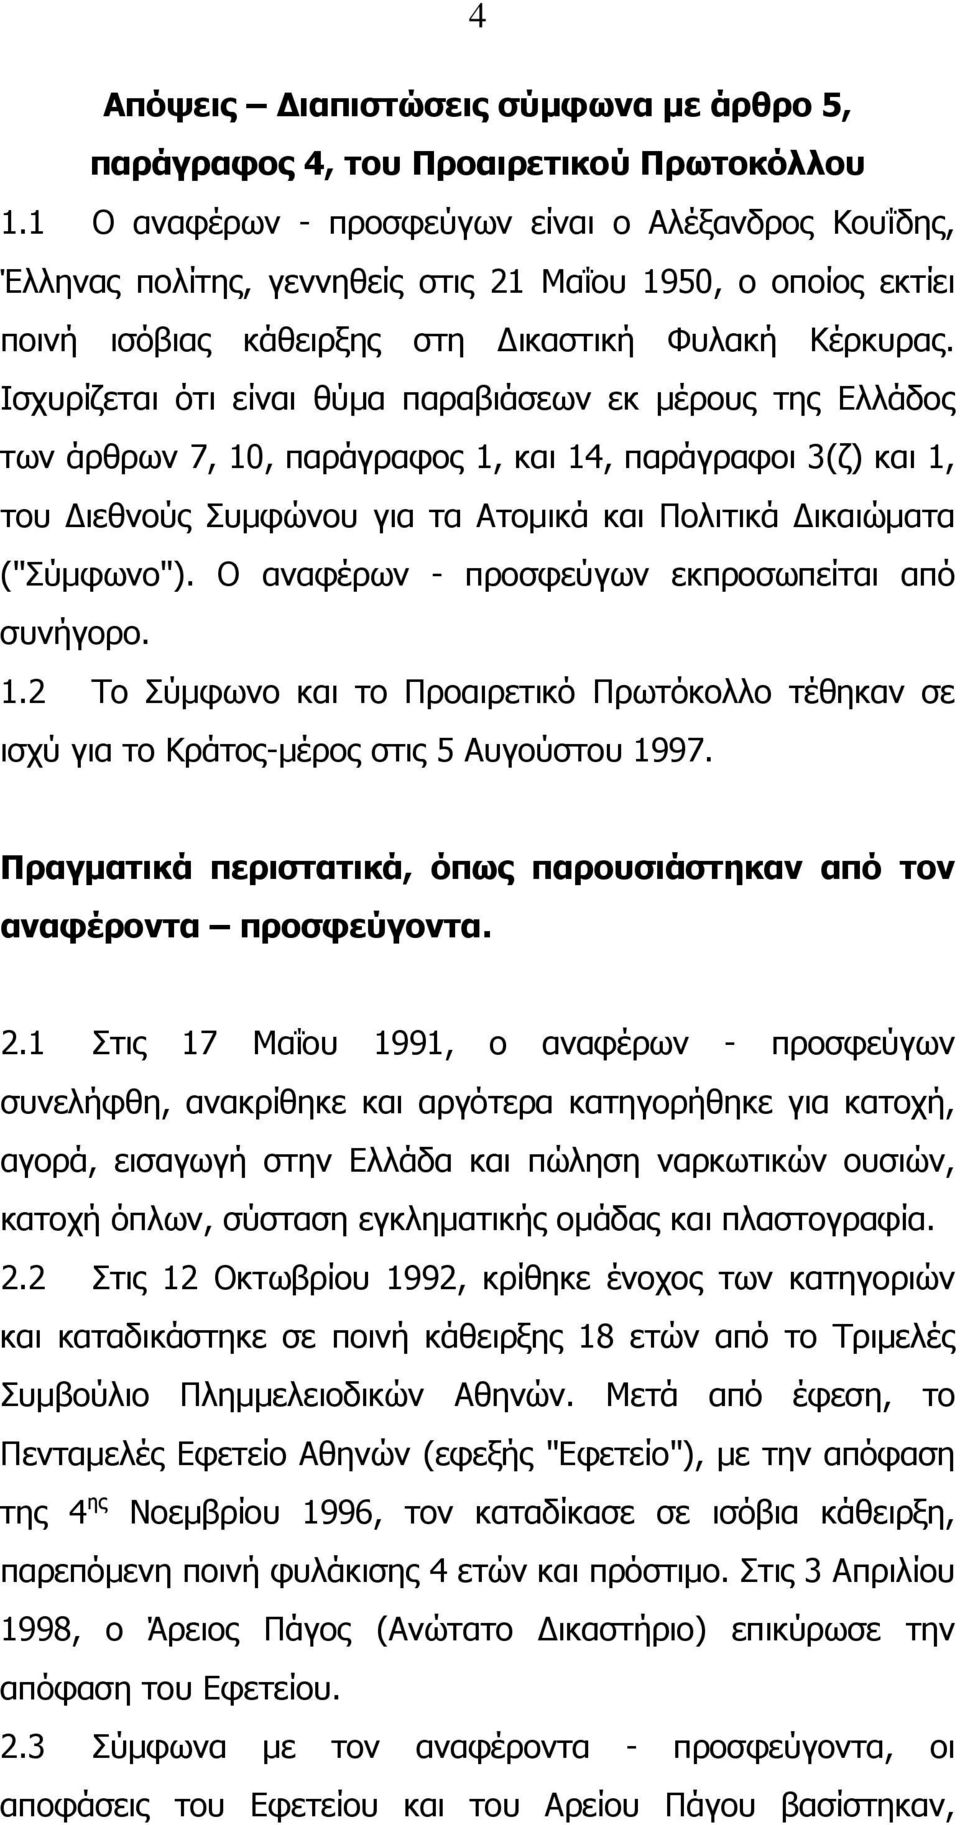 Ισχυρίζεται ότι είναι θύµα παραβιάσεων εκ µέρους της Ελλάδος των άρθρων 7, 10, παράγραφος 1, και 14, παράγραφοι 3(ζ) και 1, του ιεθνούς Συµφώνου για τα Ατοµικά και Πολιτικά ικαιώµατα ("Σύµφωνο").